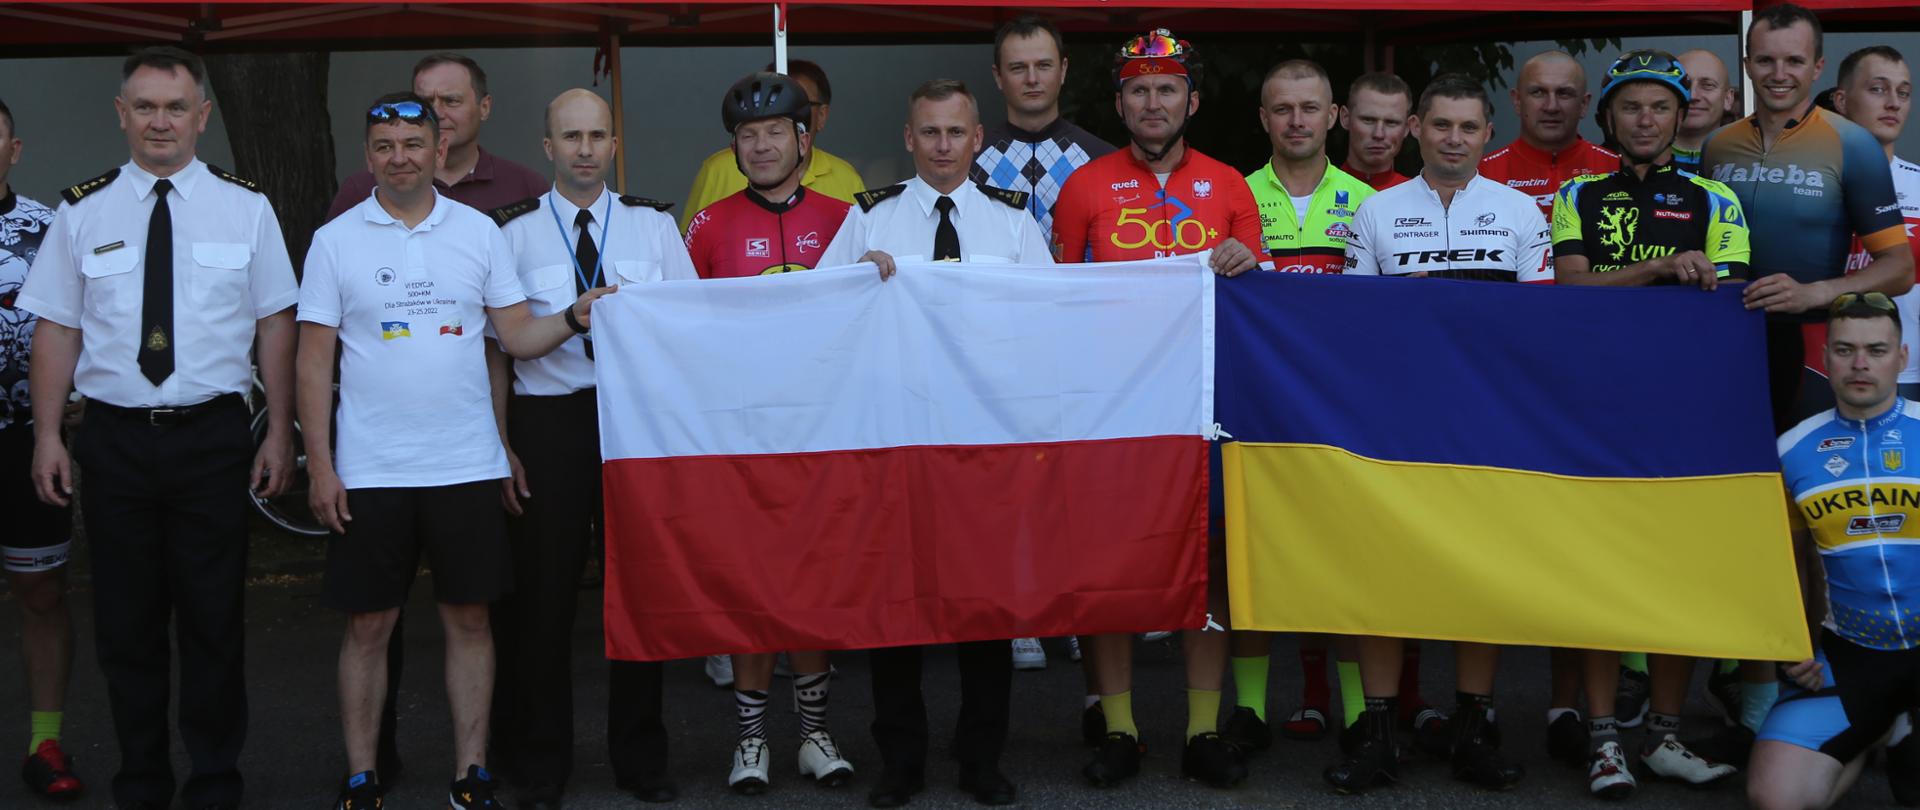 Grupowe zdjęcie uczestników maratonu kolarskiego w towarzystwie Zastępców Komendanta Centralnej Szkoły PSP (18 osób). Uczestnicy zdjęcia trzymają rozwinięte obok siebie flagi Polski i Ukrainy